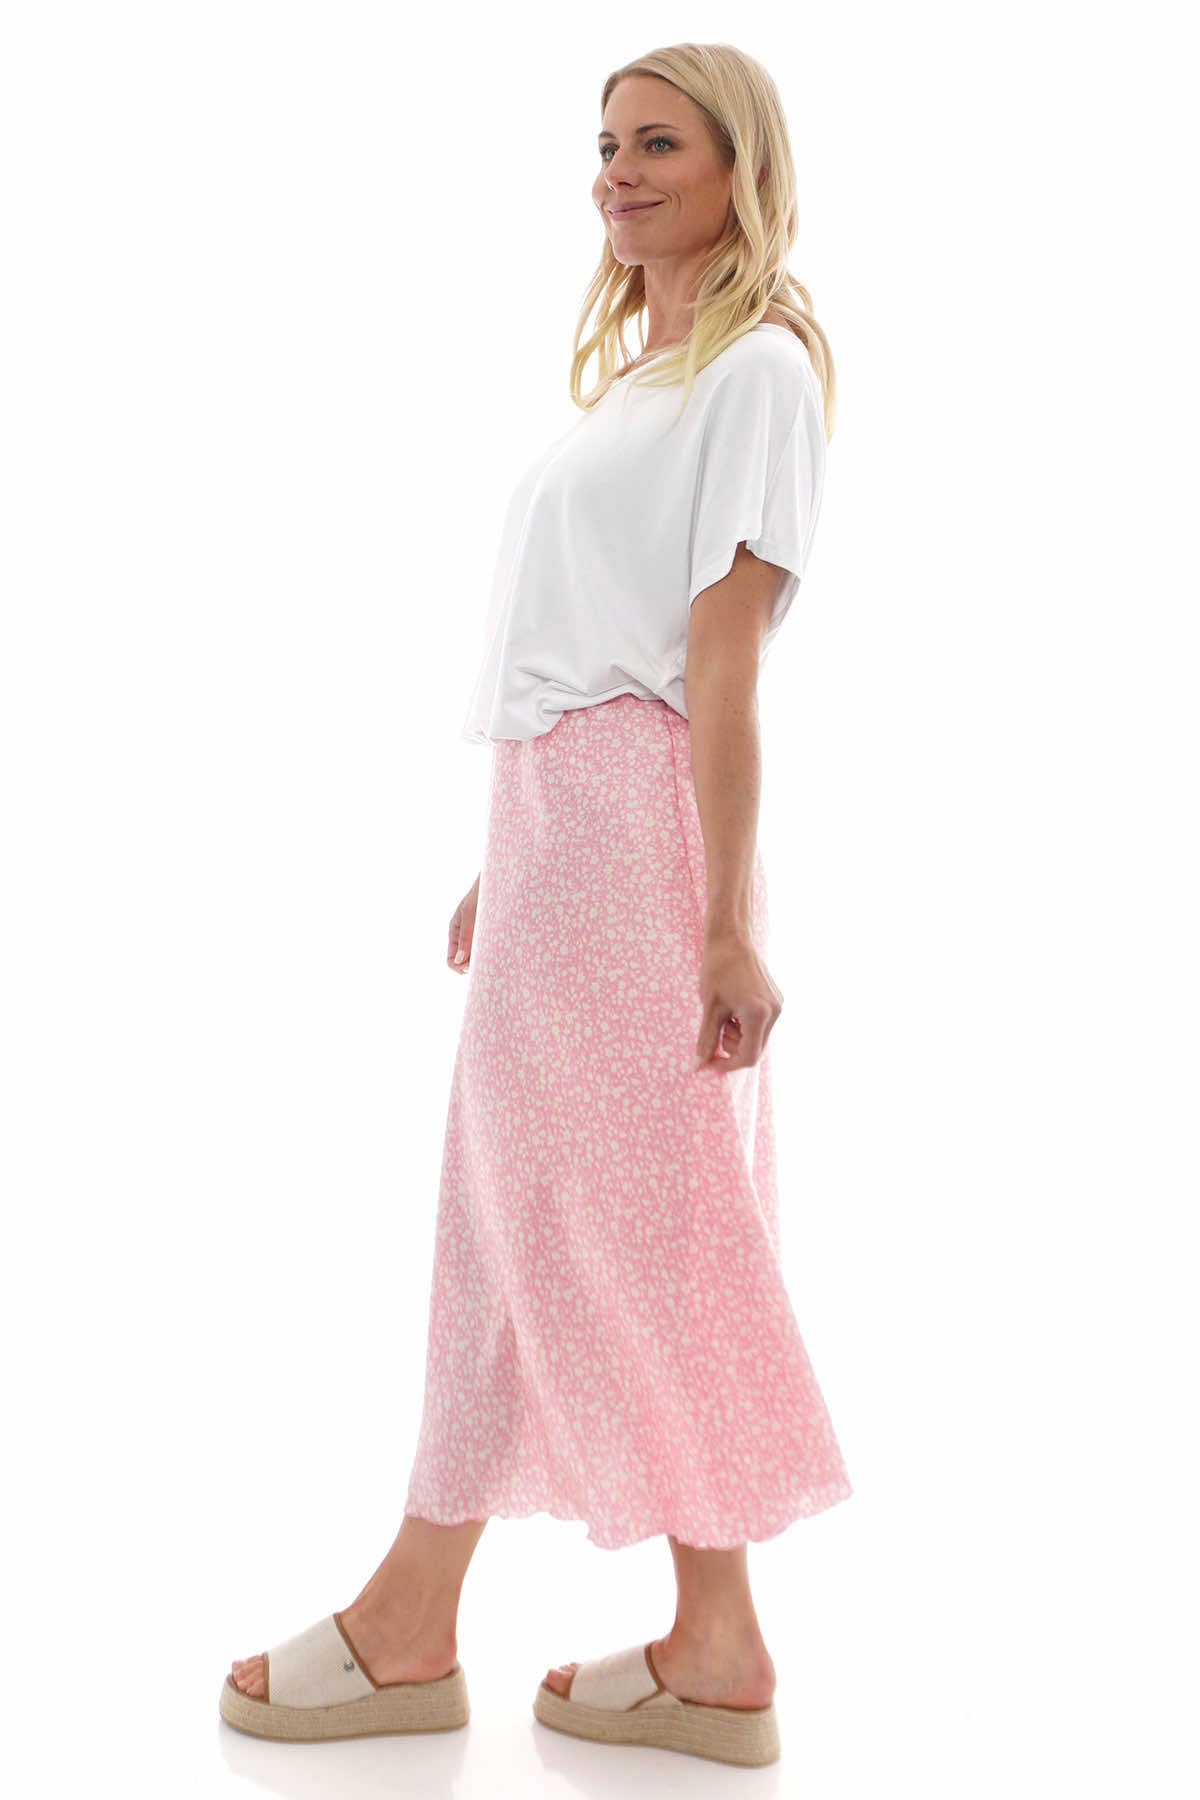 Ottilie Floral Print Skirt Pink